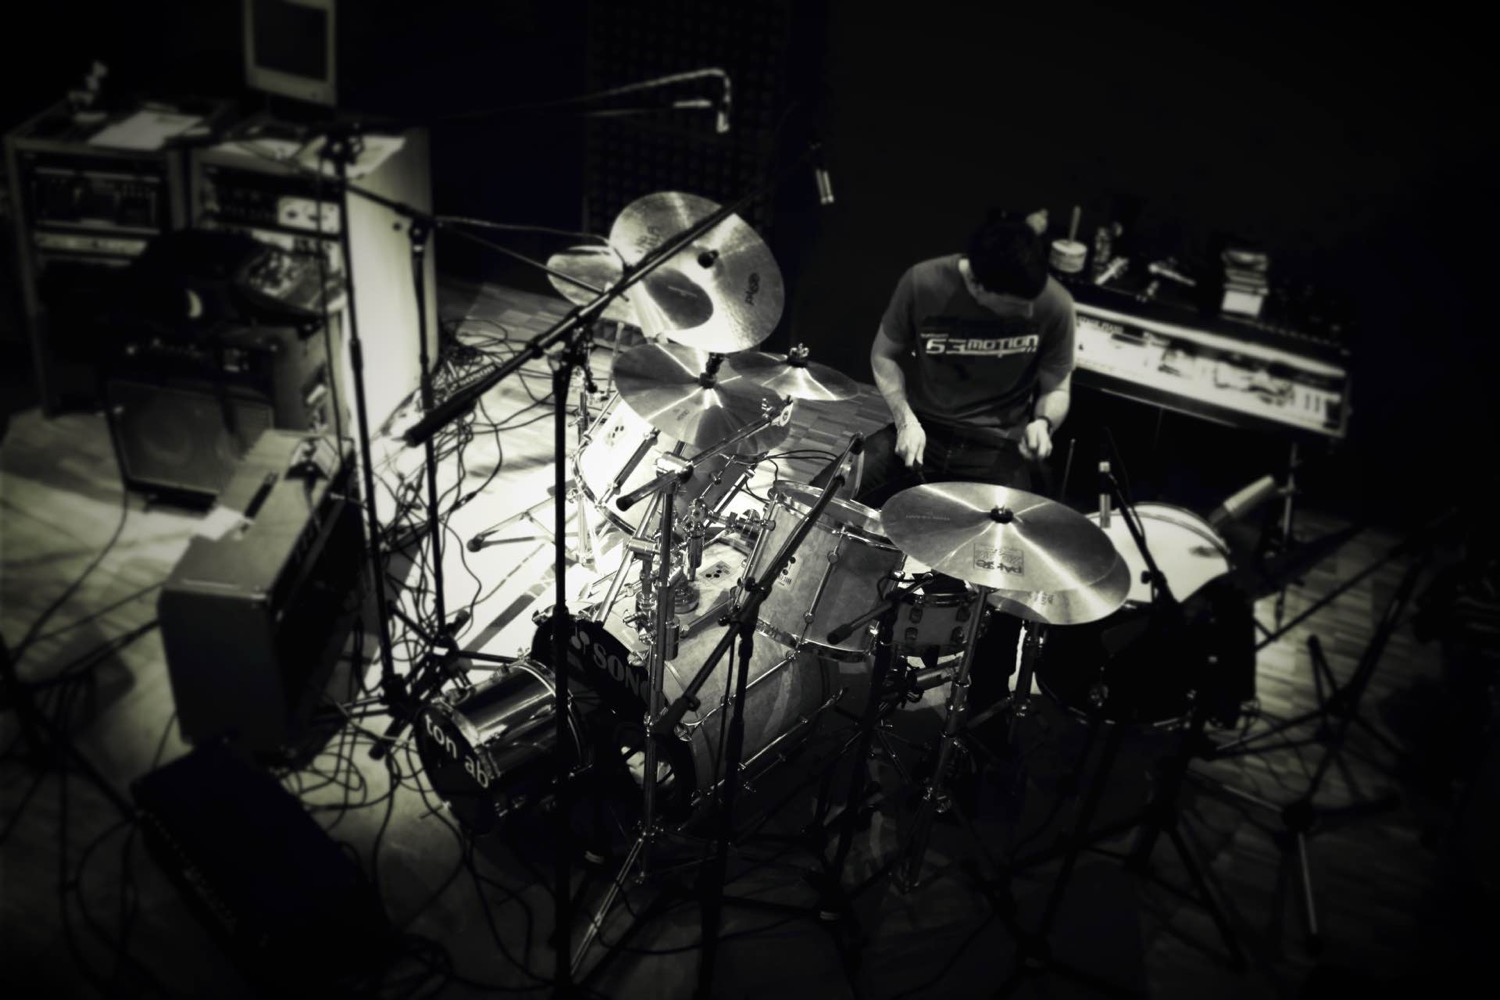 Fabio Drummer